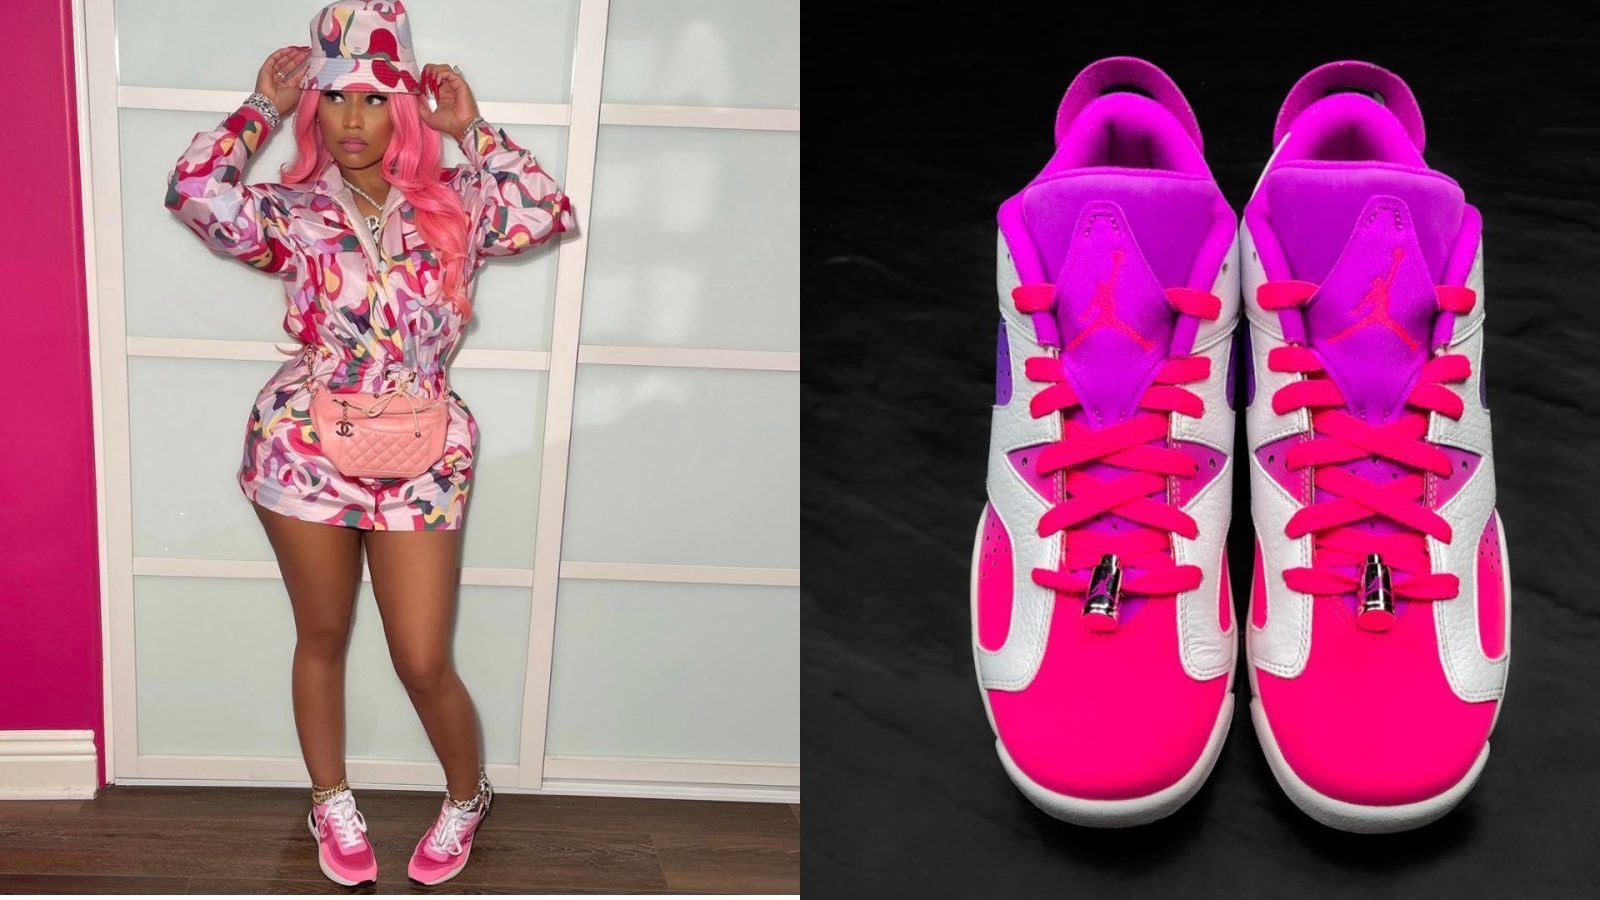 Nicki Minaj's new bright-pink Air Jordans are super freaky in the best way